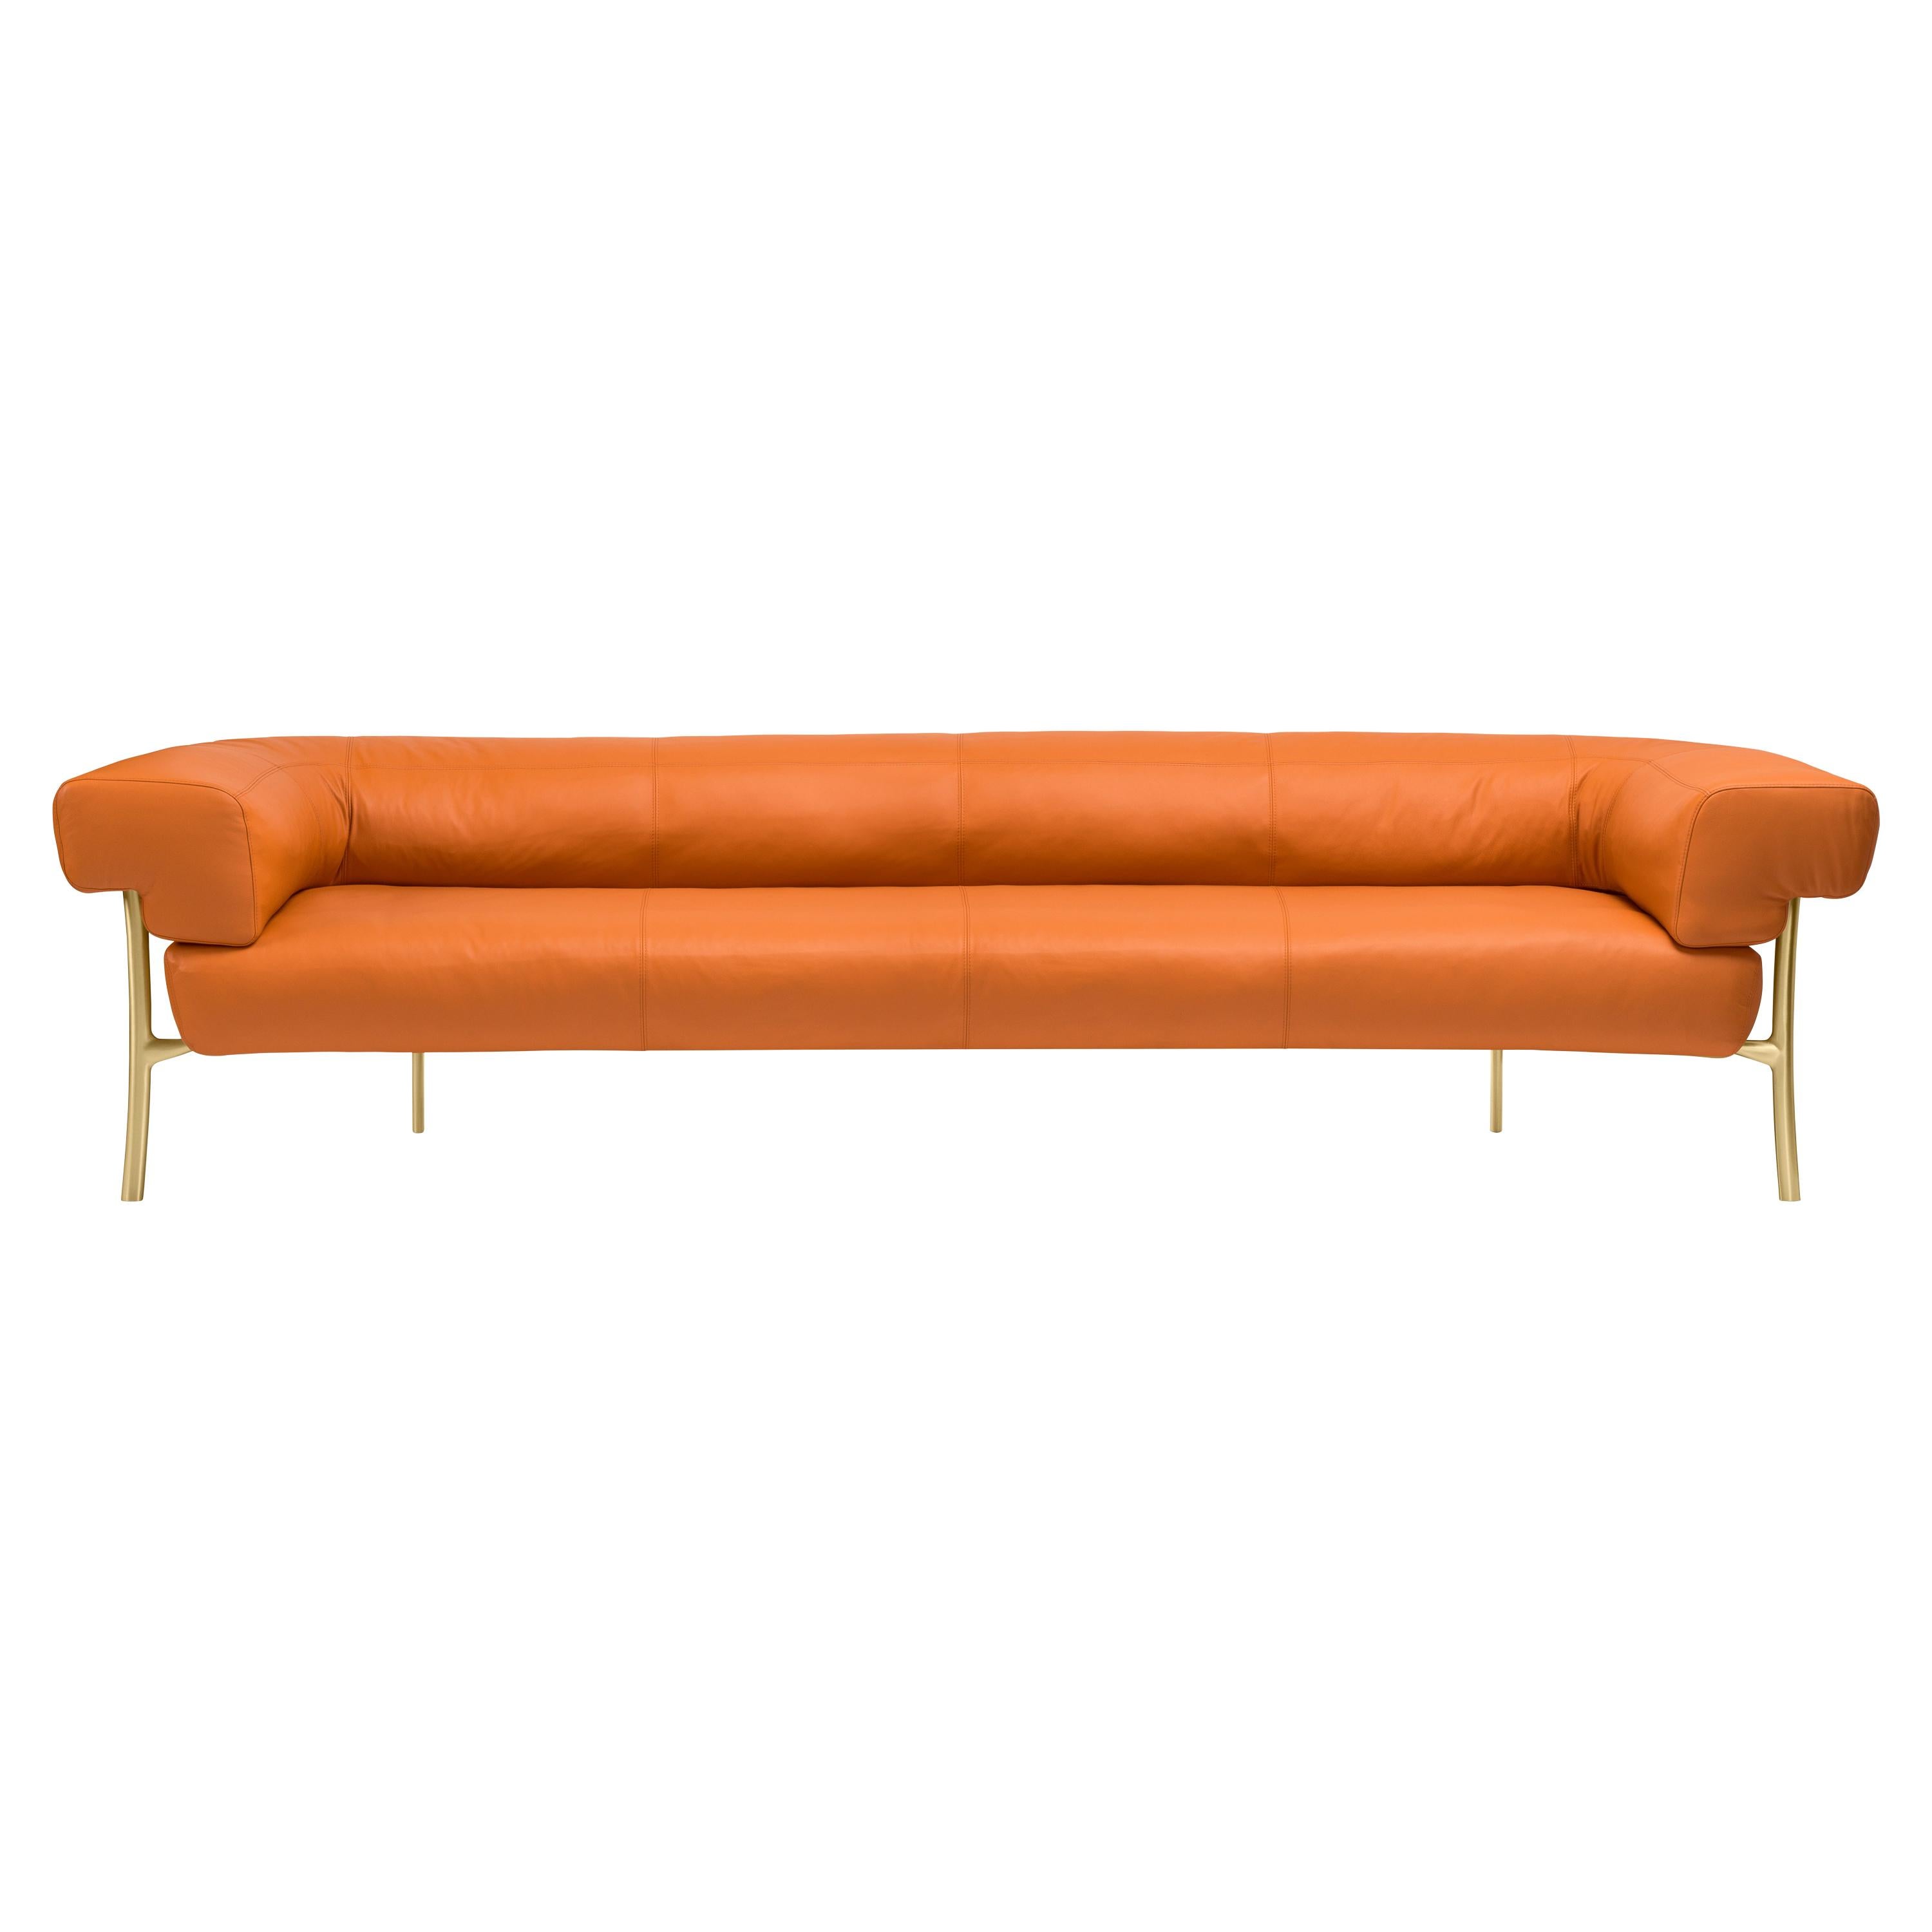 Ghidini 1961 Katana 4-Seat Sofa in Natural Leather by Paolo Rizzatto